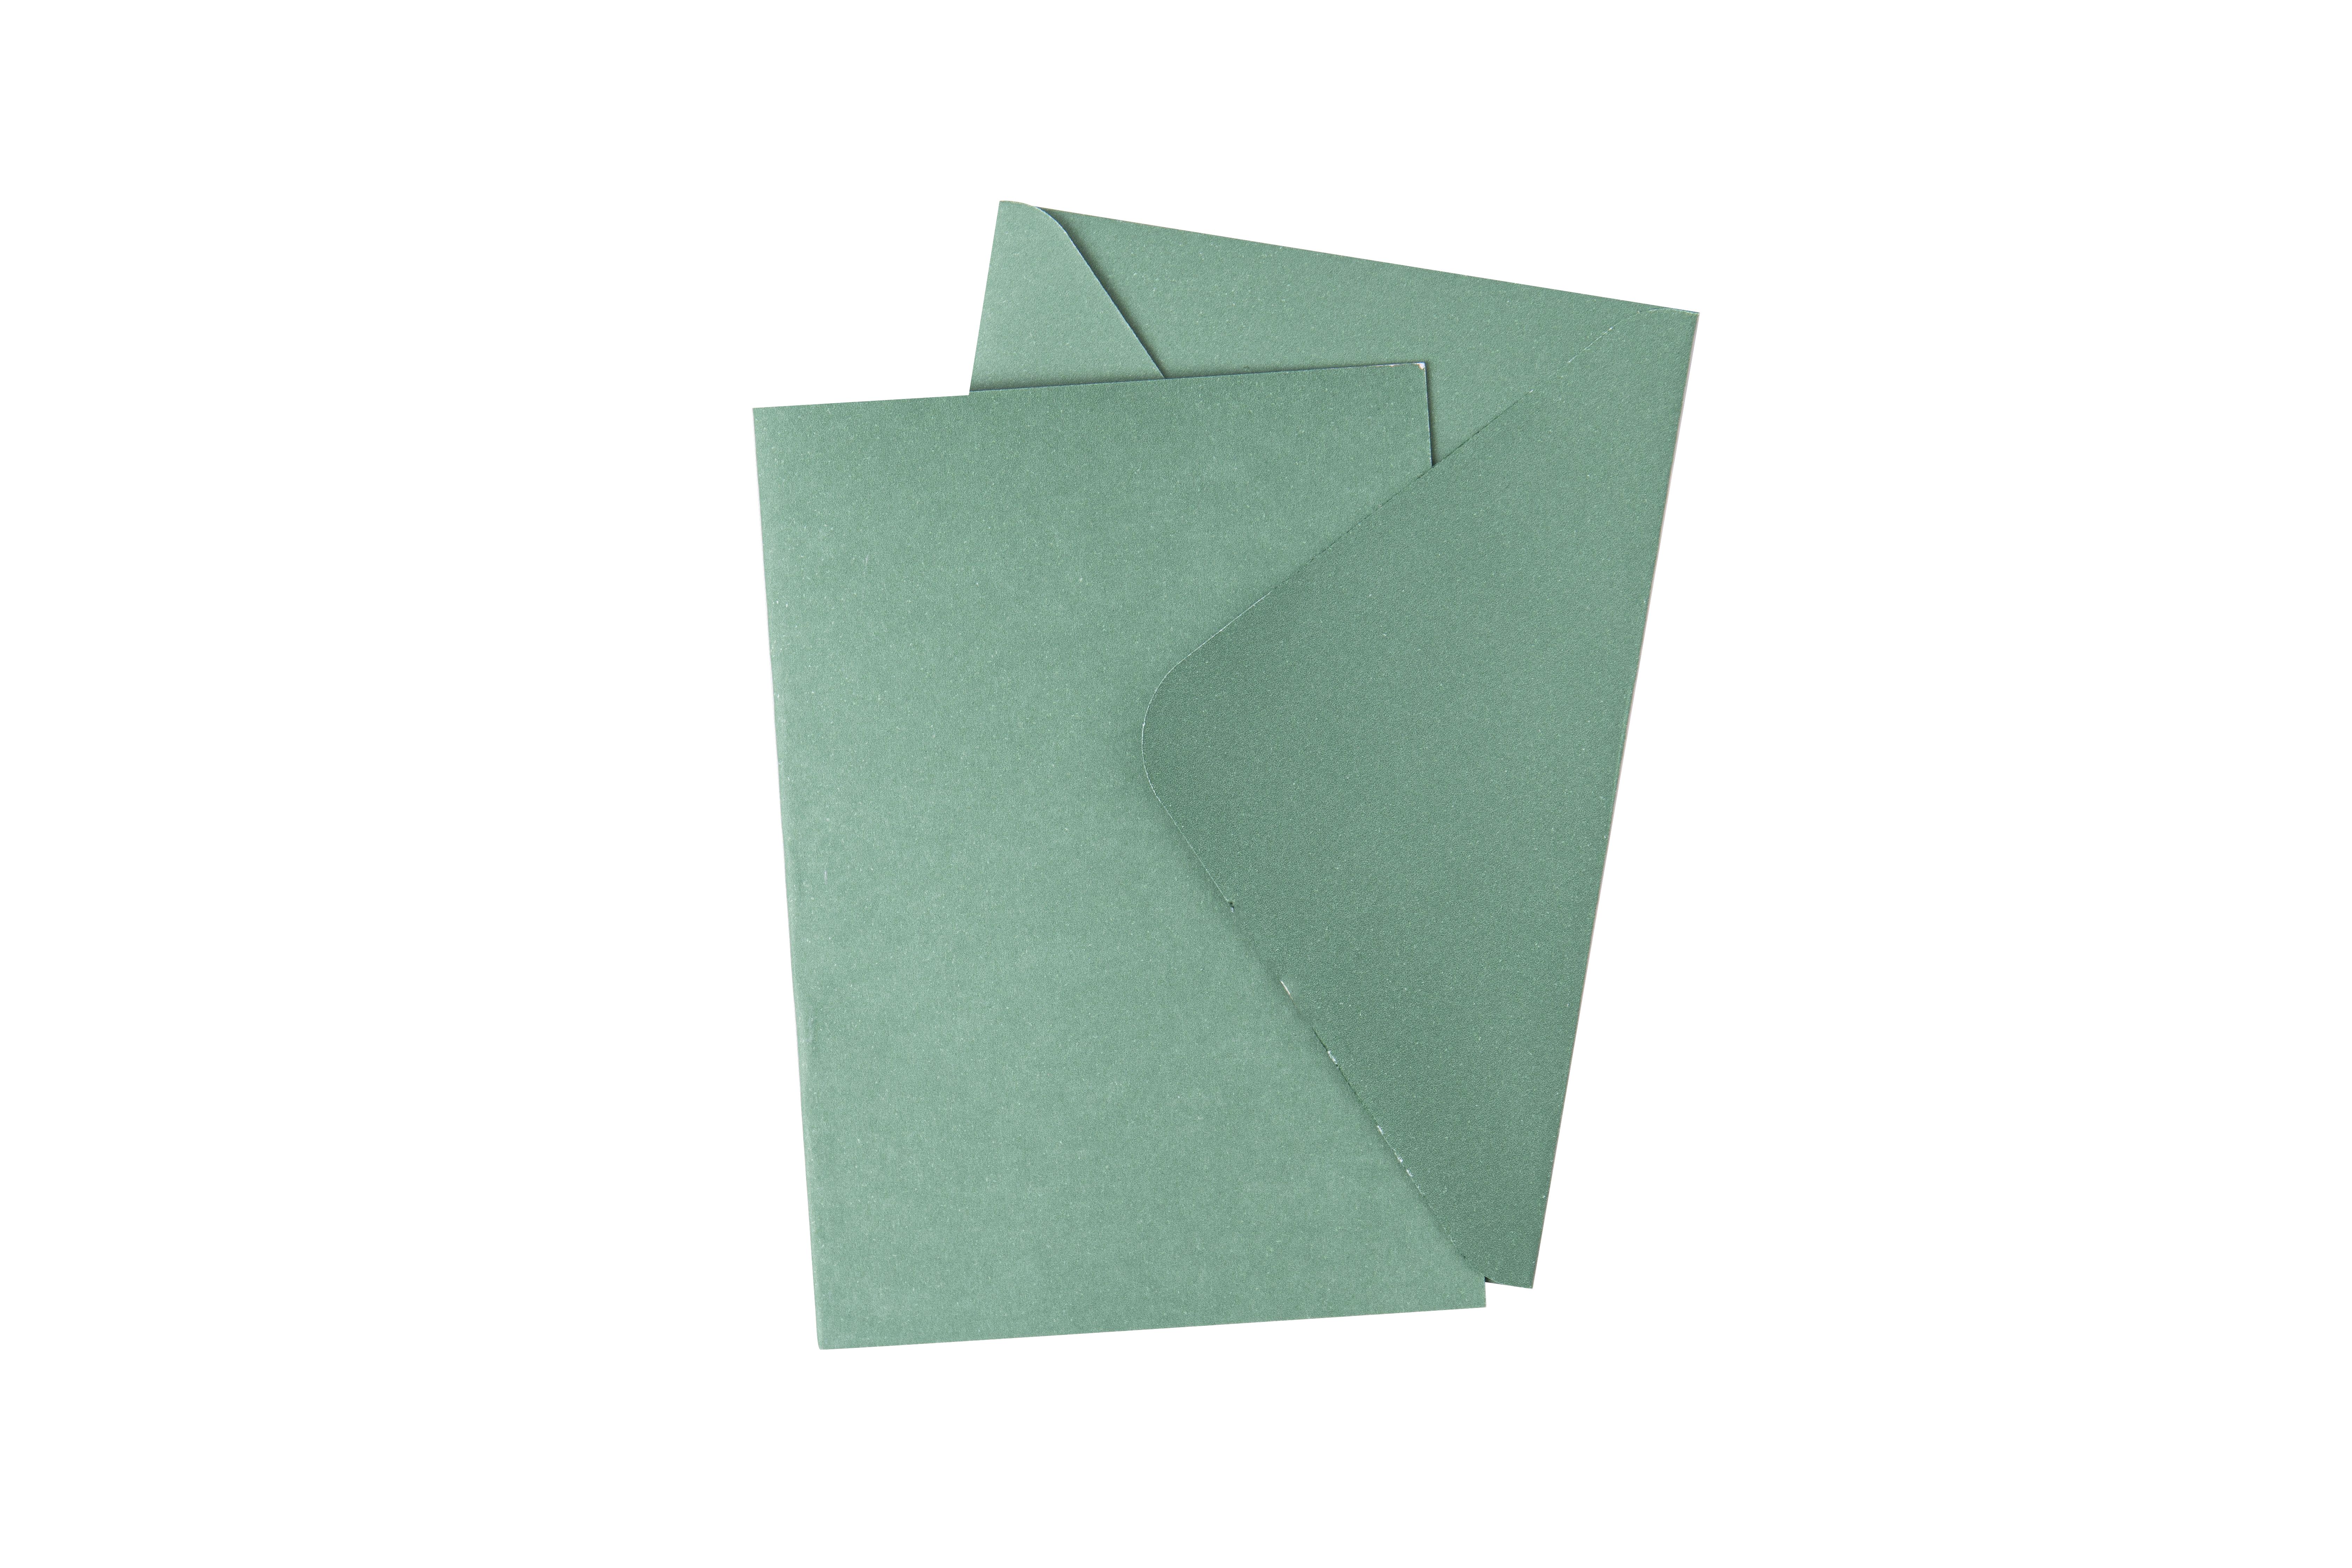 Sizzix • Surfacez kaart & envelop set 10 vellen Fir Tree